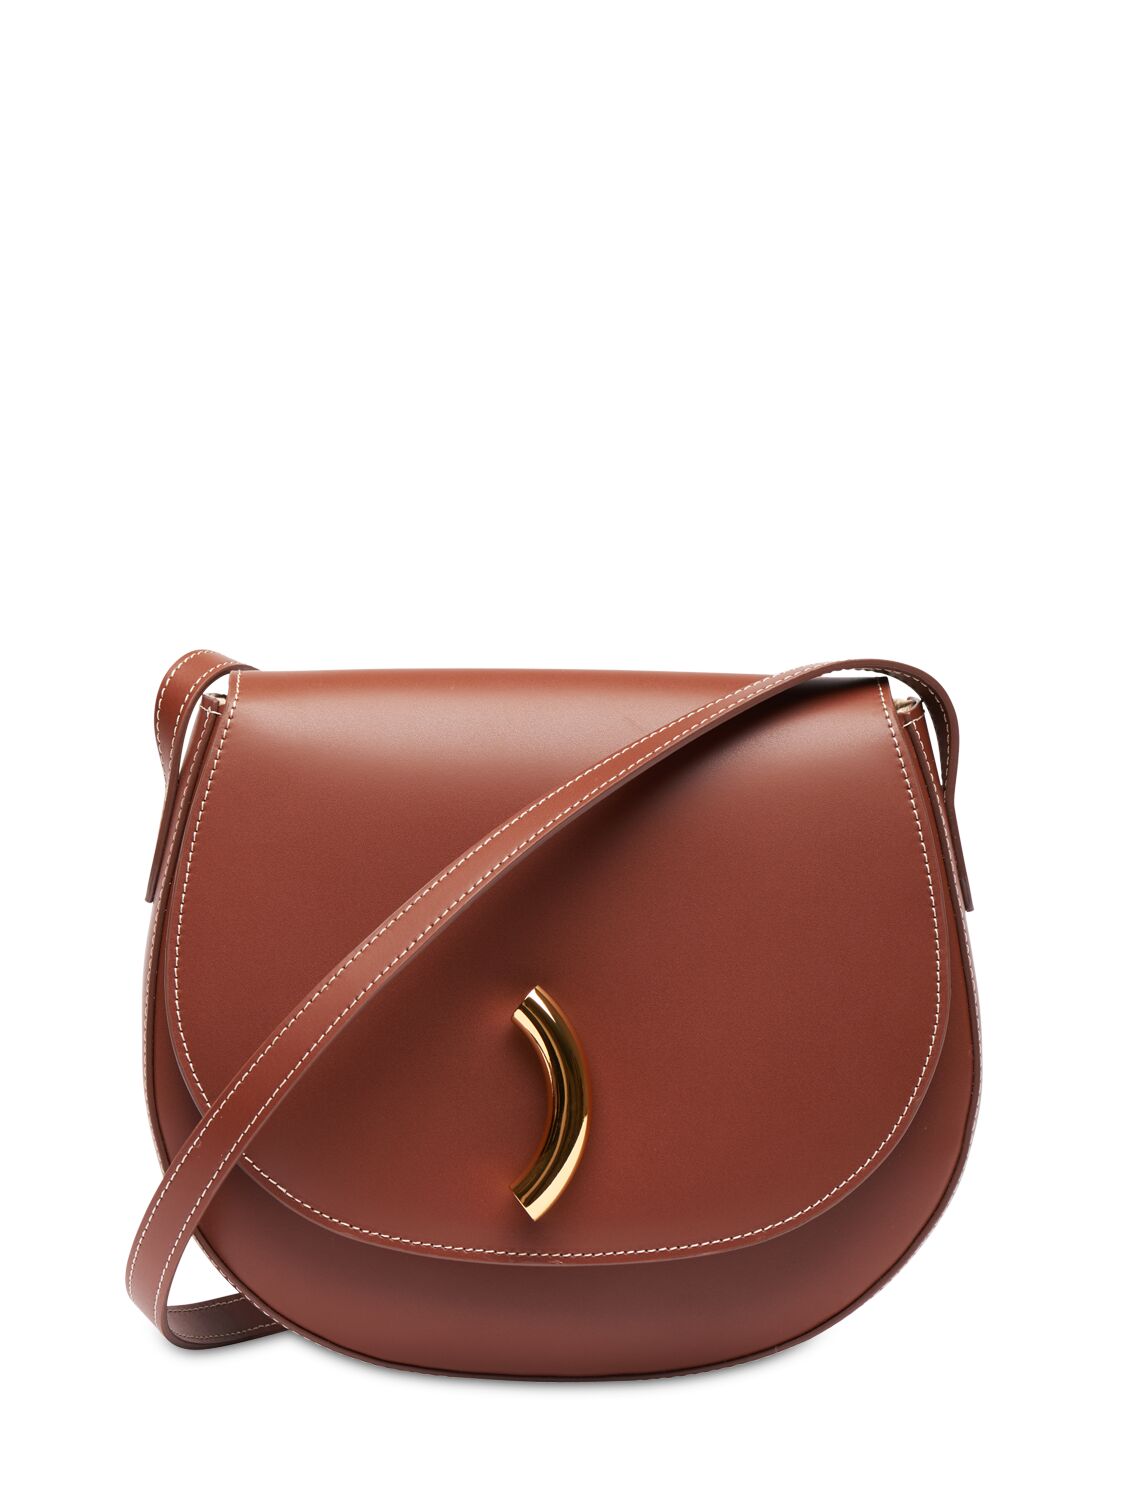 Image of Maccheroni Leather Saddle Bag